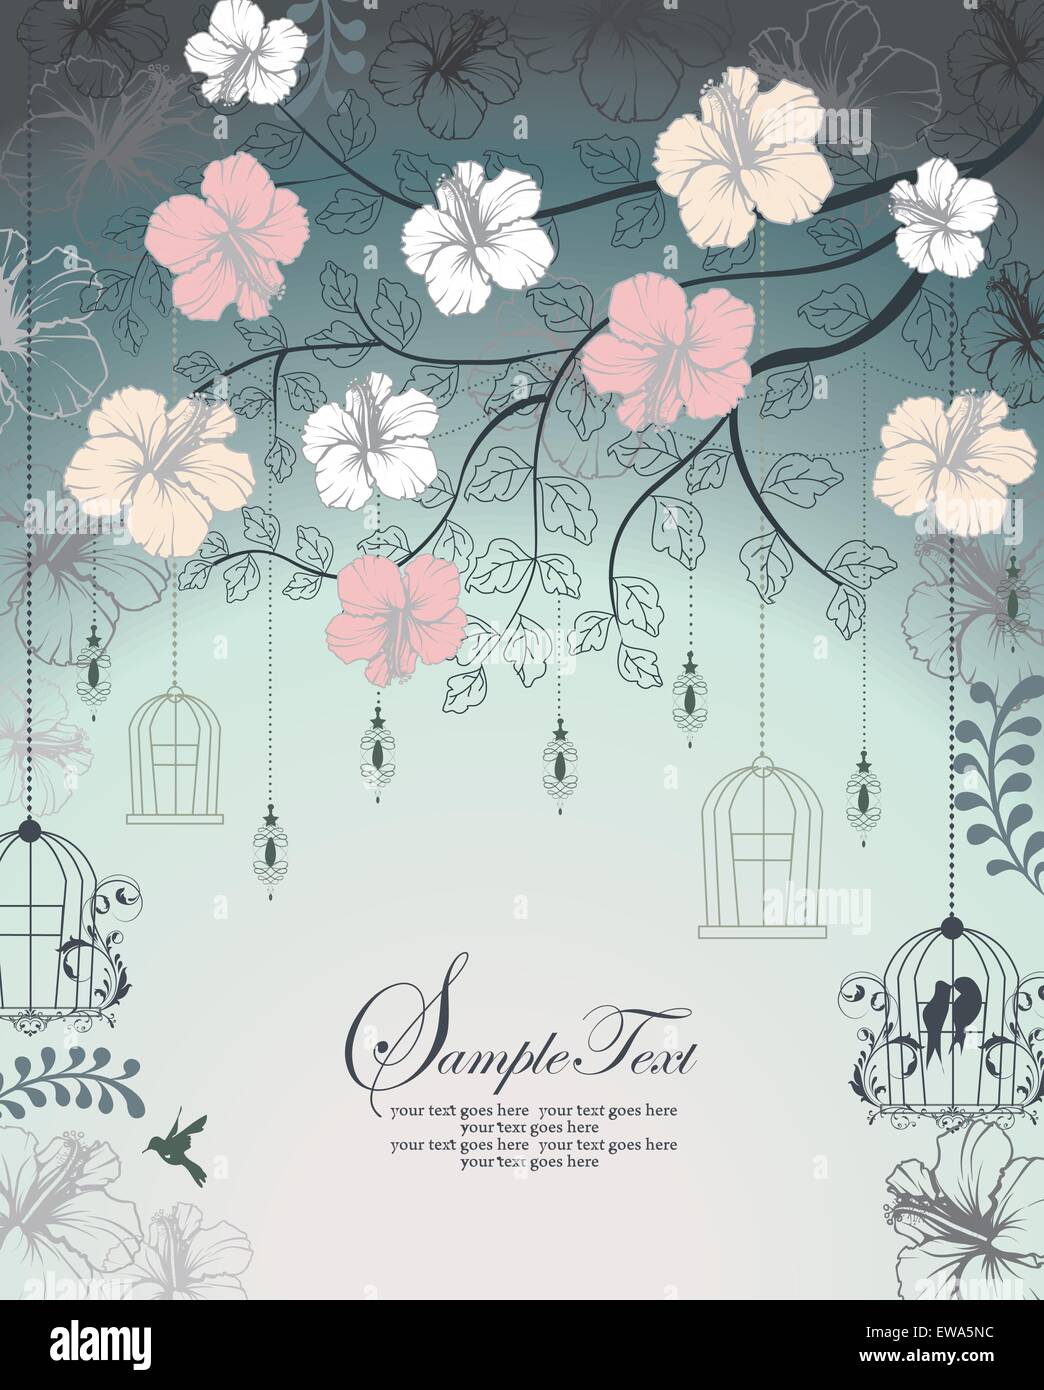 Tarjeta de invitación Vintage Retro elegante adornados con diseño floral abstracto, flores multicolores y hojas en gris azulado Ilustración del Vector